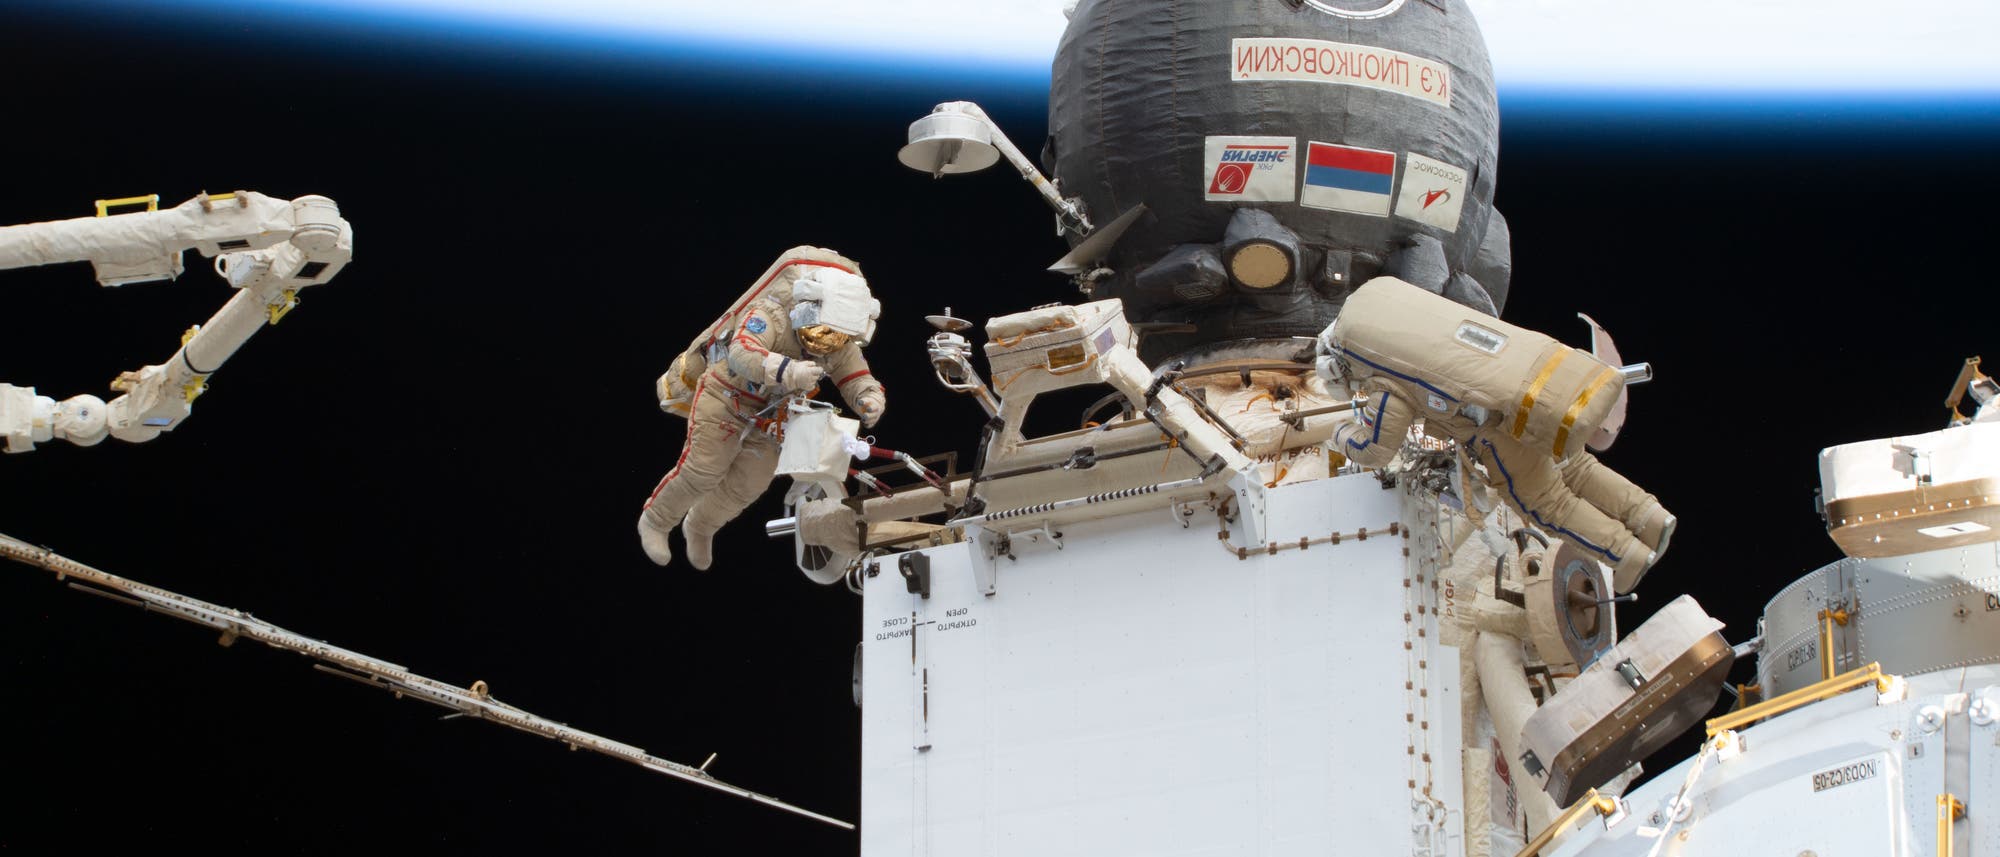 Zwei Kosmonauten machen einen Weltraumspaziergang